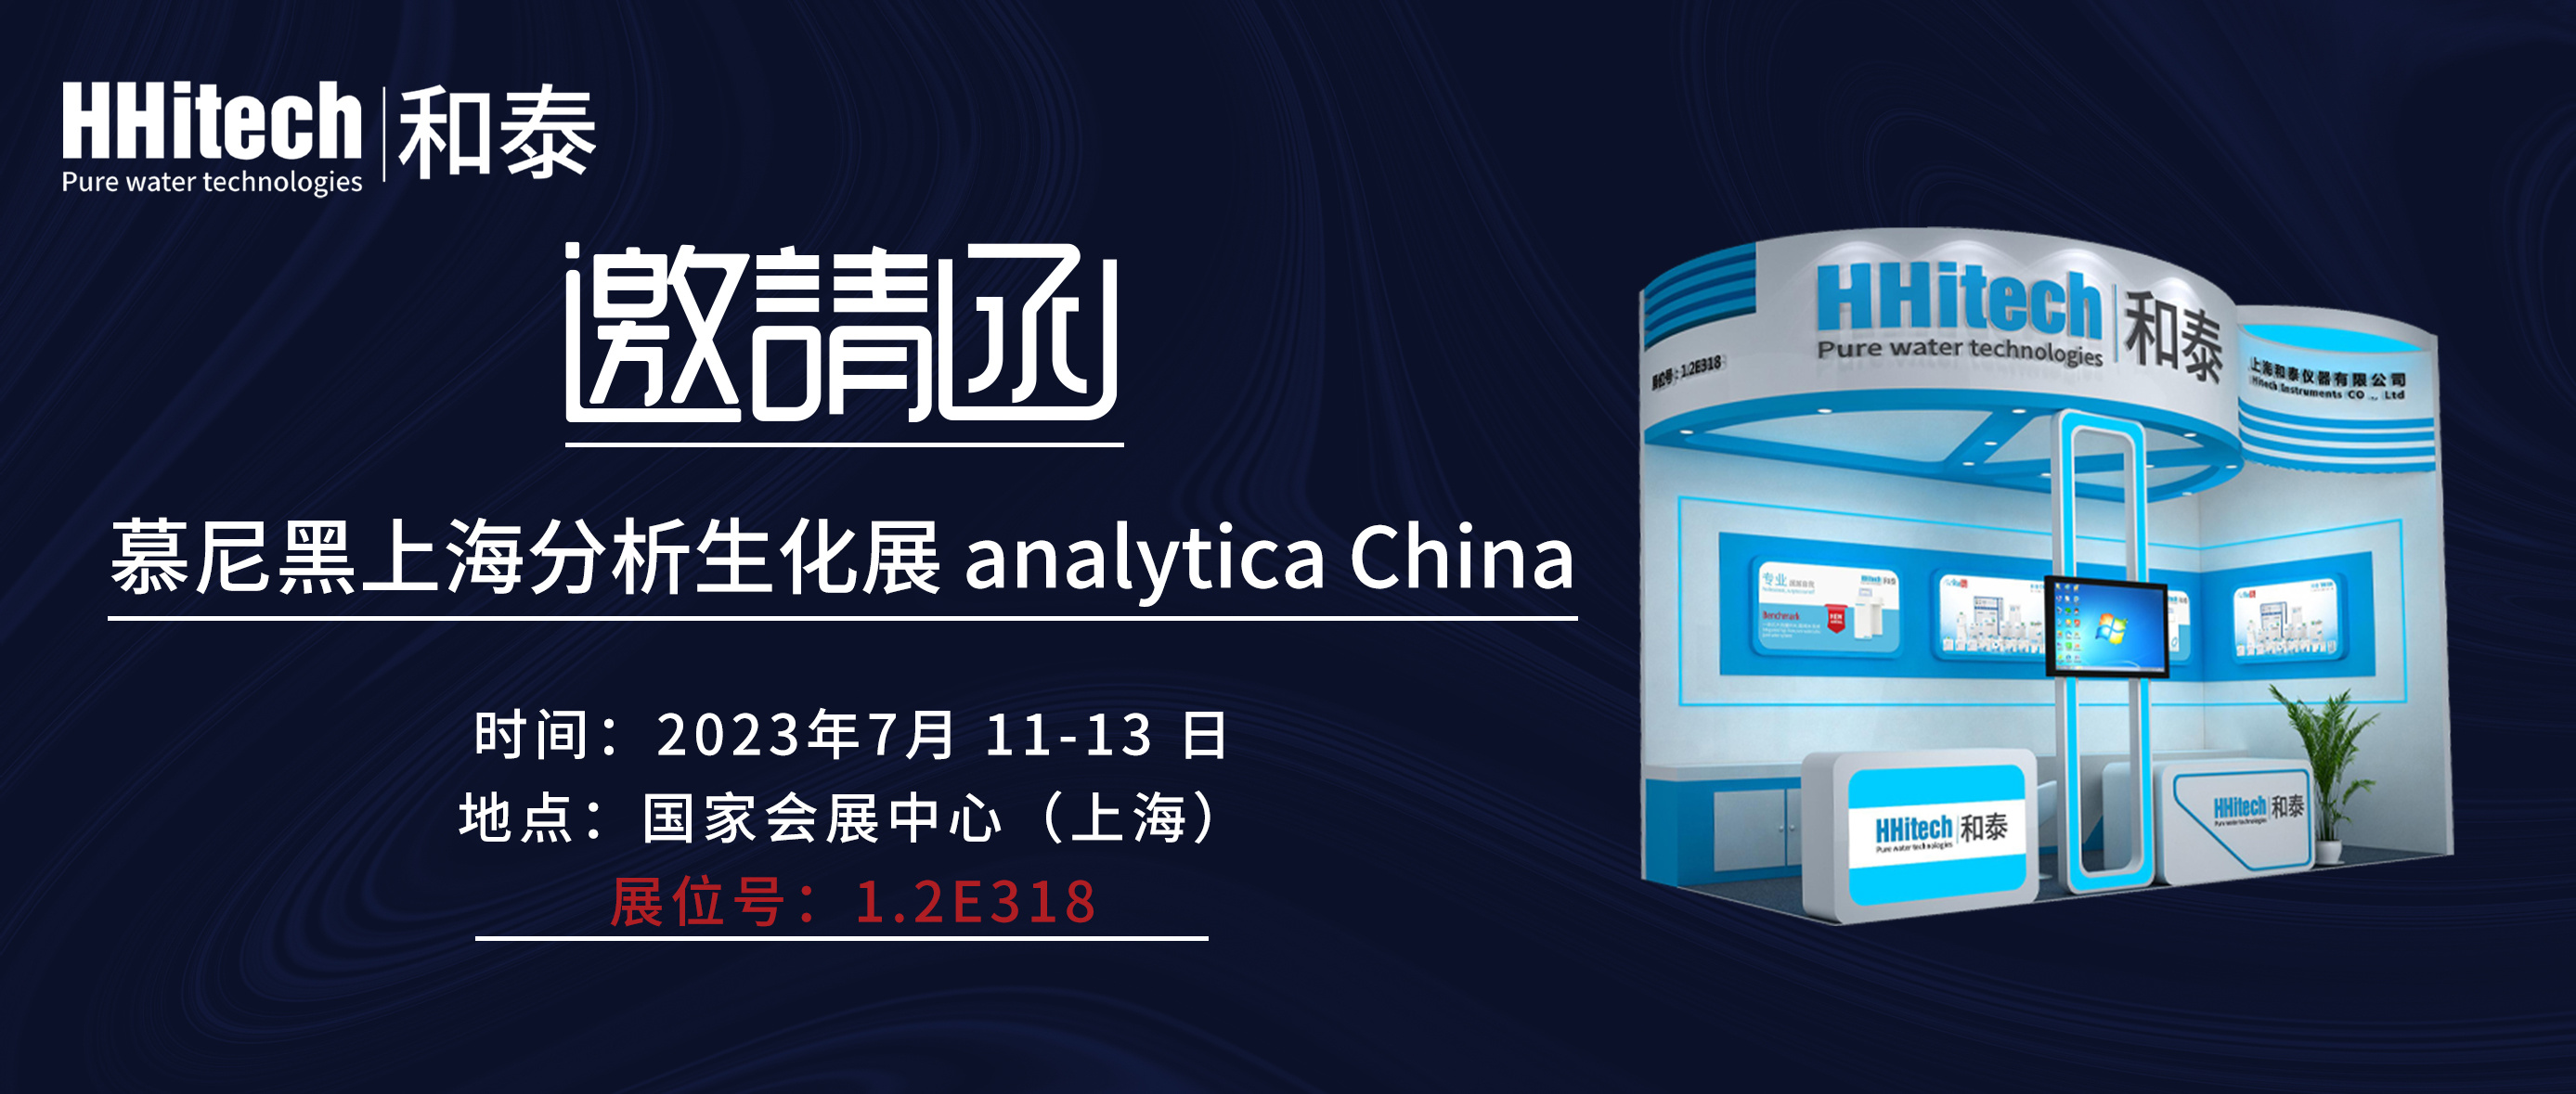 和泰展讯 | 慕尼黑上海分析生化展 analytica China